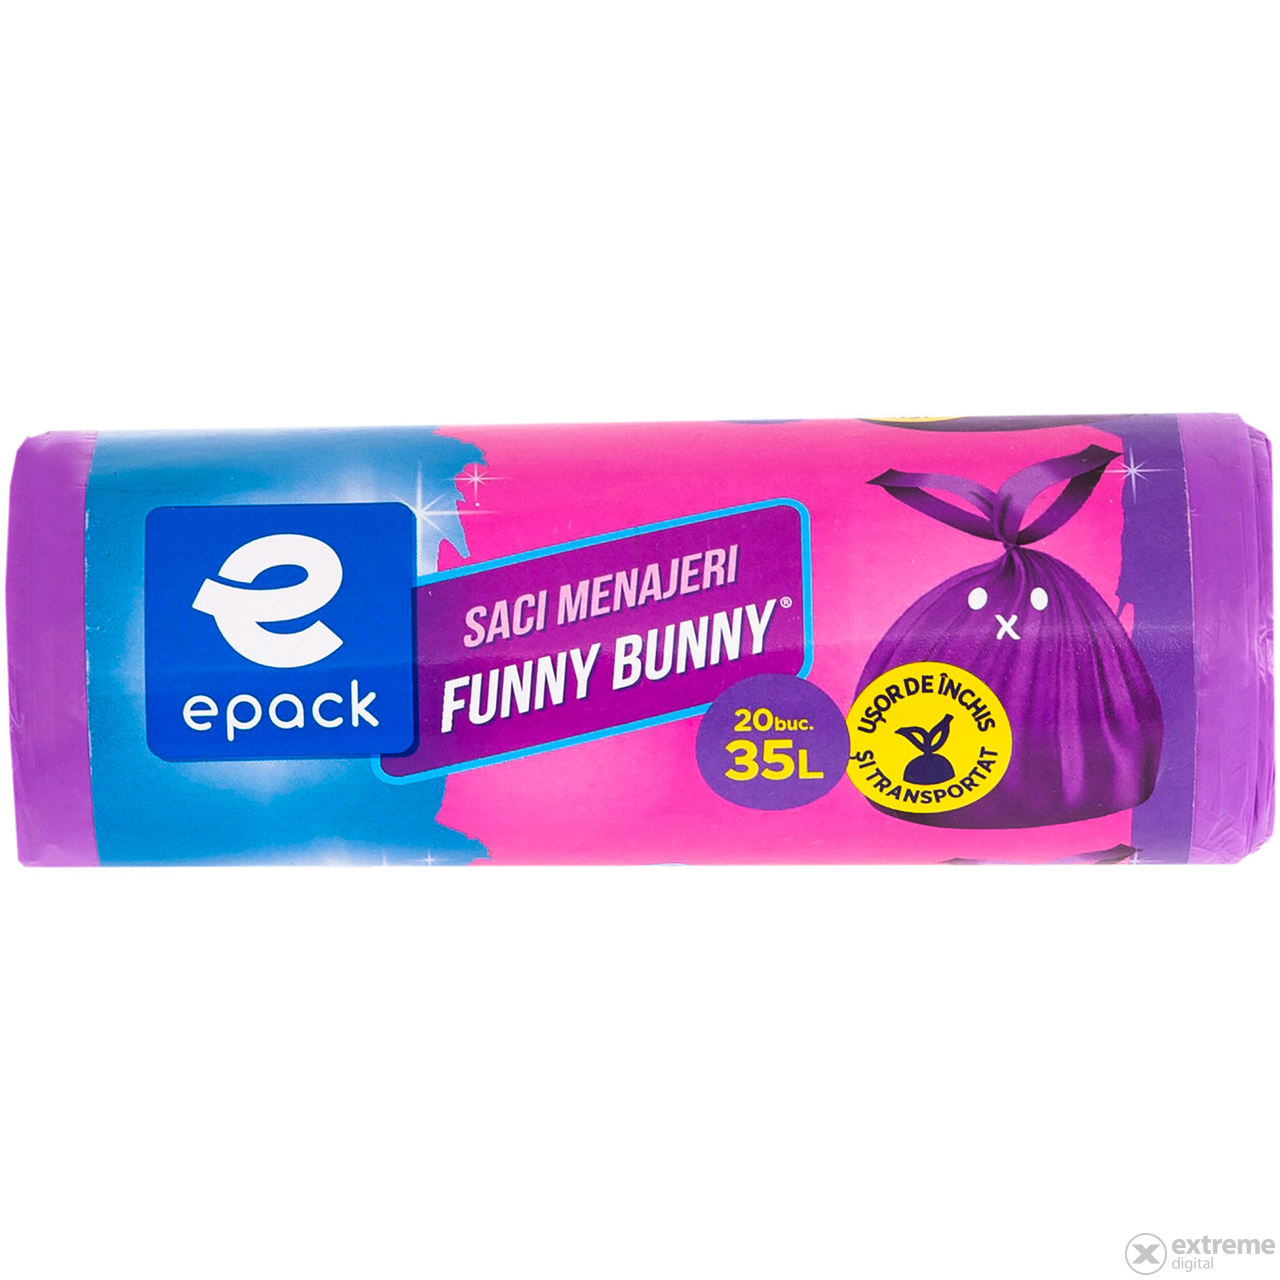 Epack Funny Bunny szemetes zsák, 35 l, 52 x 57 cm + 16 cm, 20 db/tekercs, lila